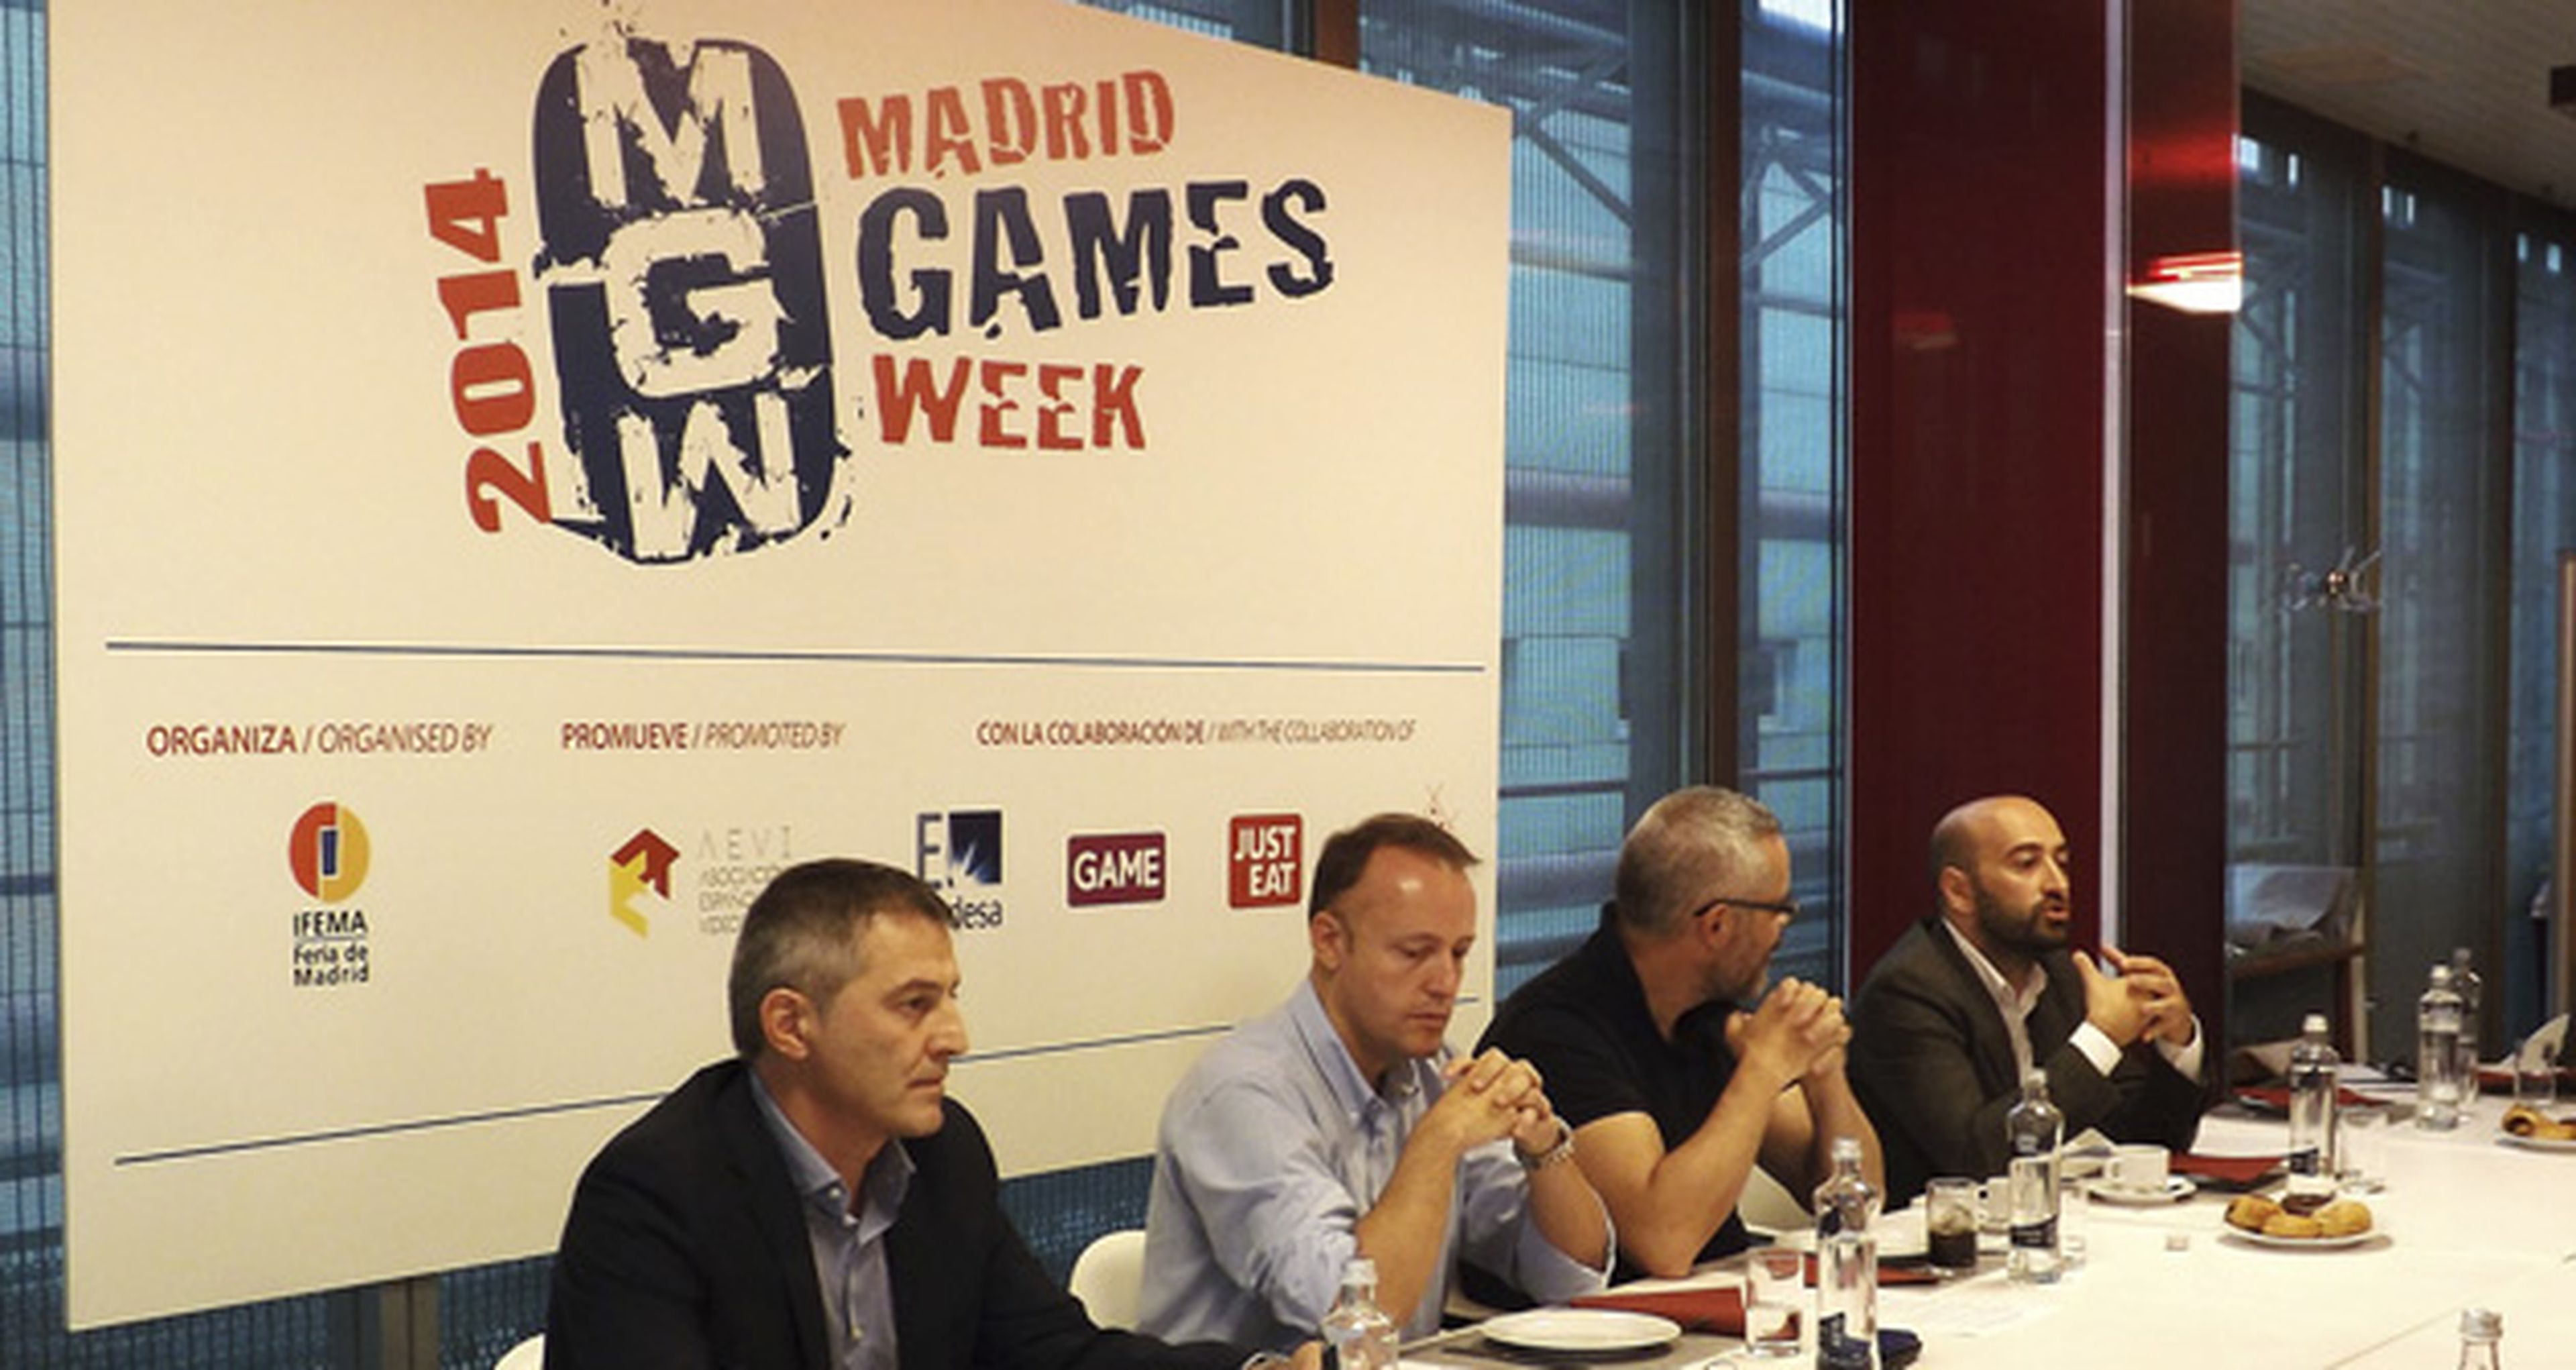 Madrid Games Week 2014: Triplicará el número de stands expositores